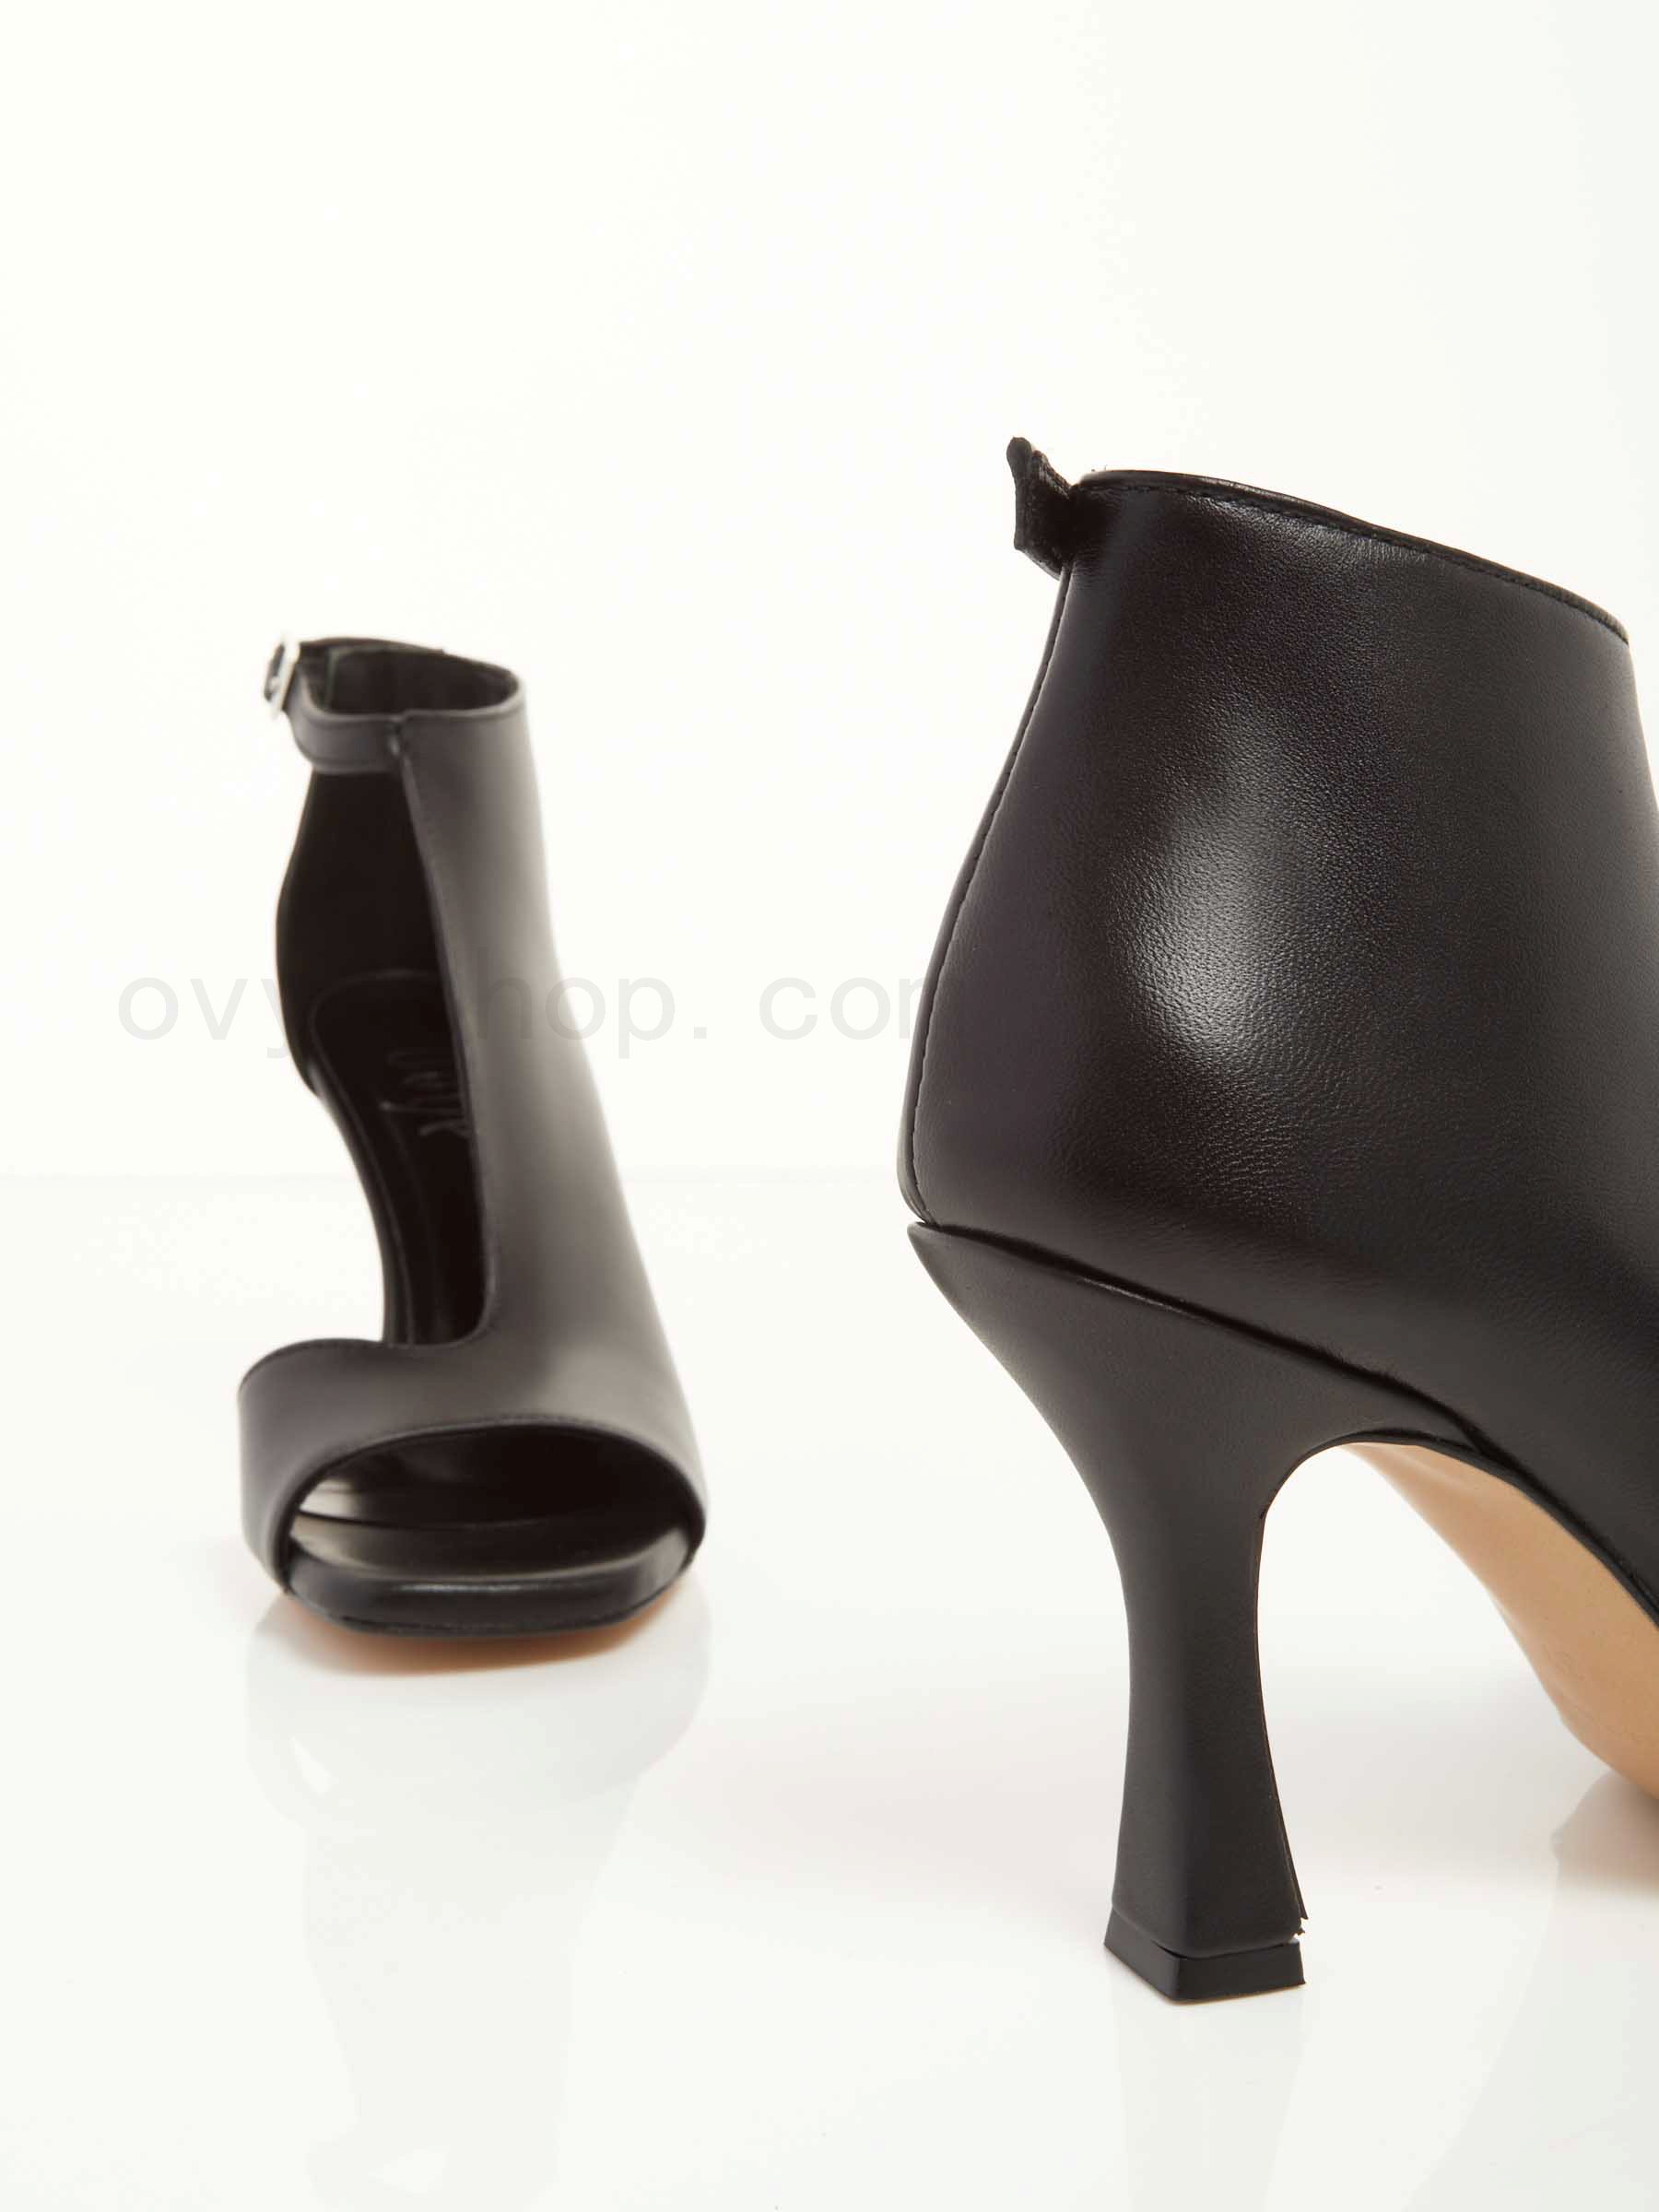 Acquistare Leather Sandals F0817885-0426 Prezzo